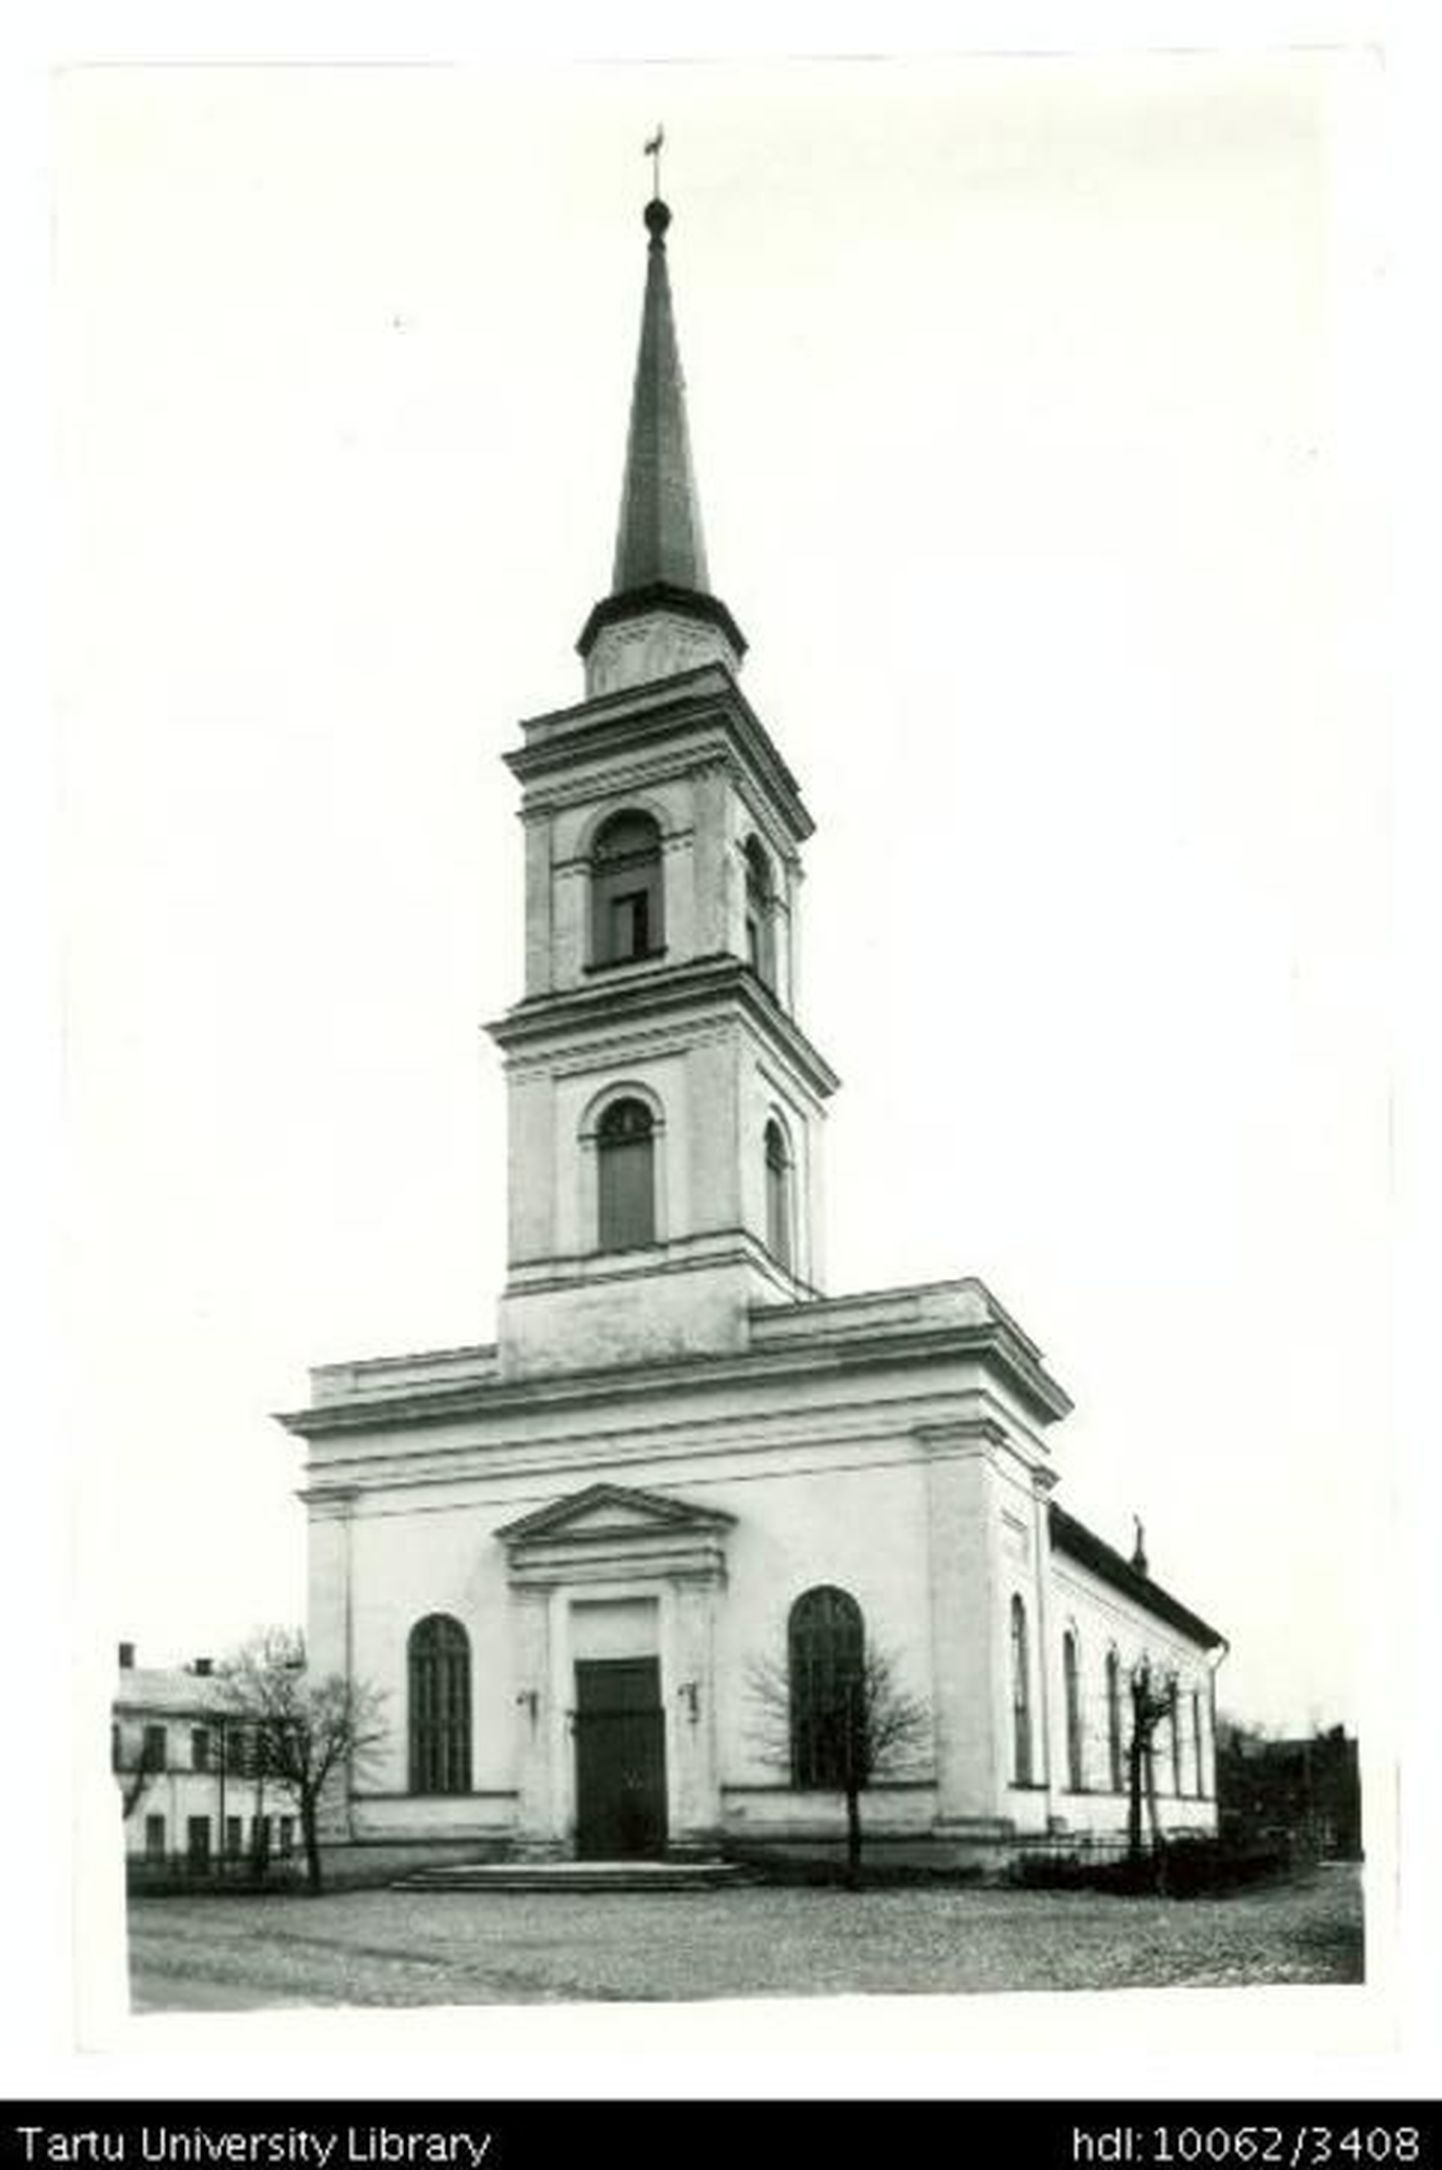 Selline nägi Maarja kirik välja enne Tartu pommitamist Teises maailmasõjas